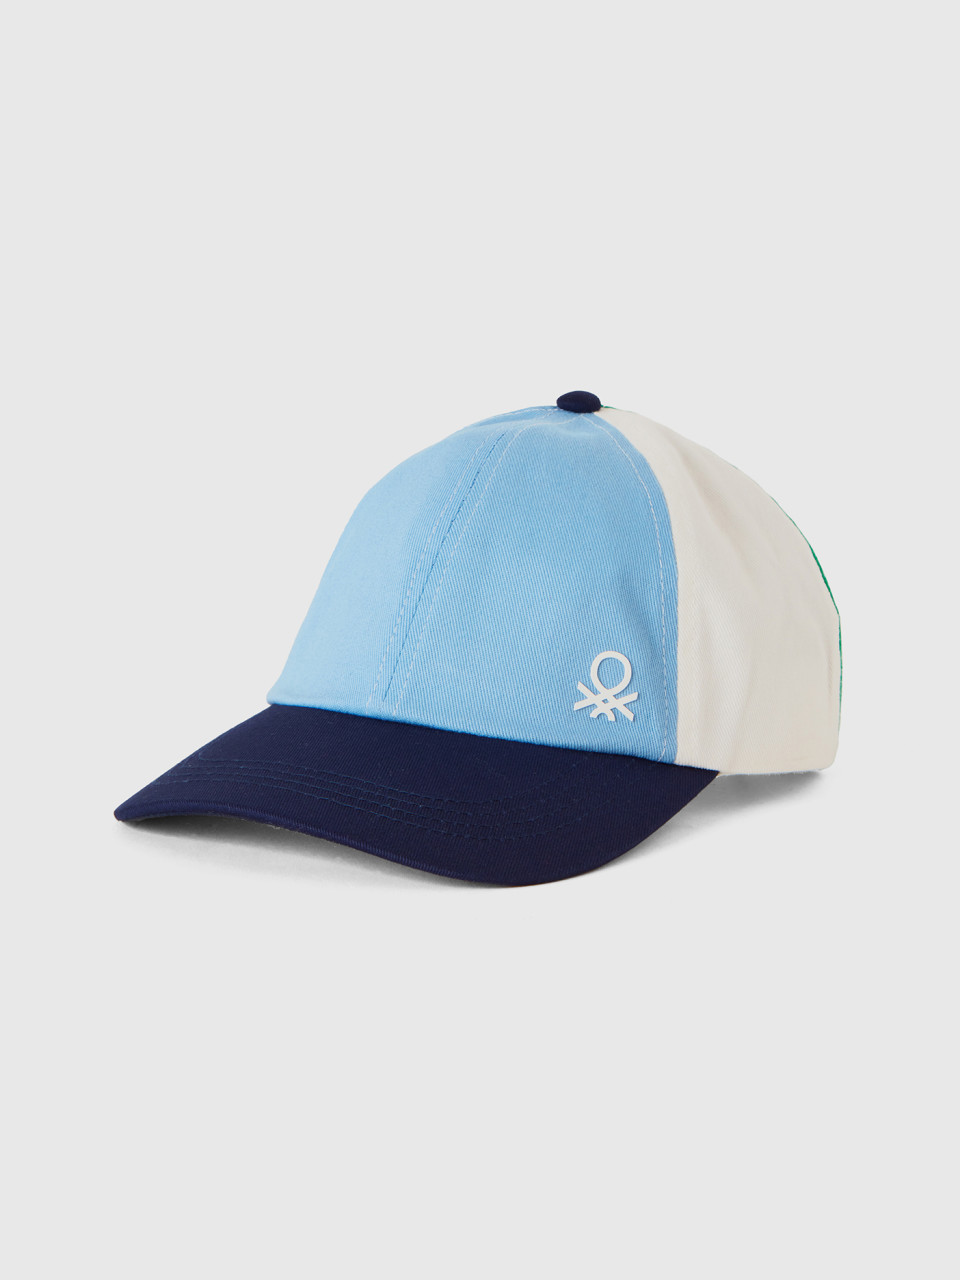 Benetton, Multicolor Baseball Hat, Dark Blue, Kids